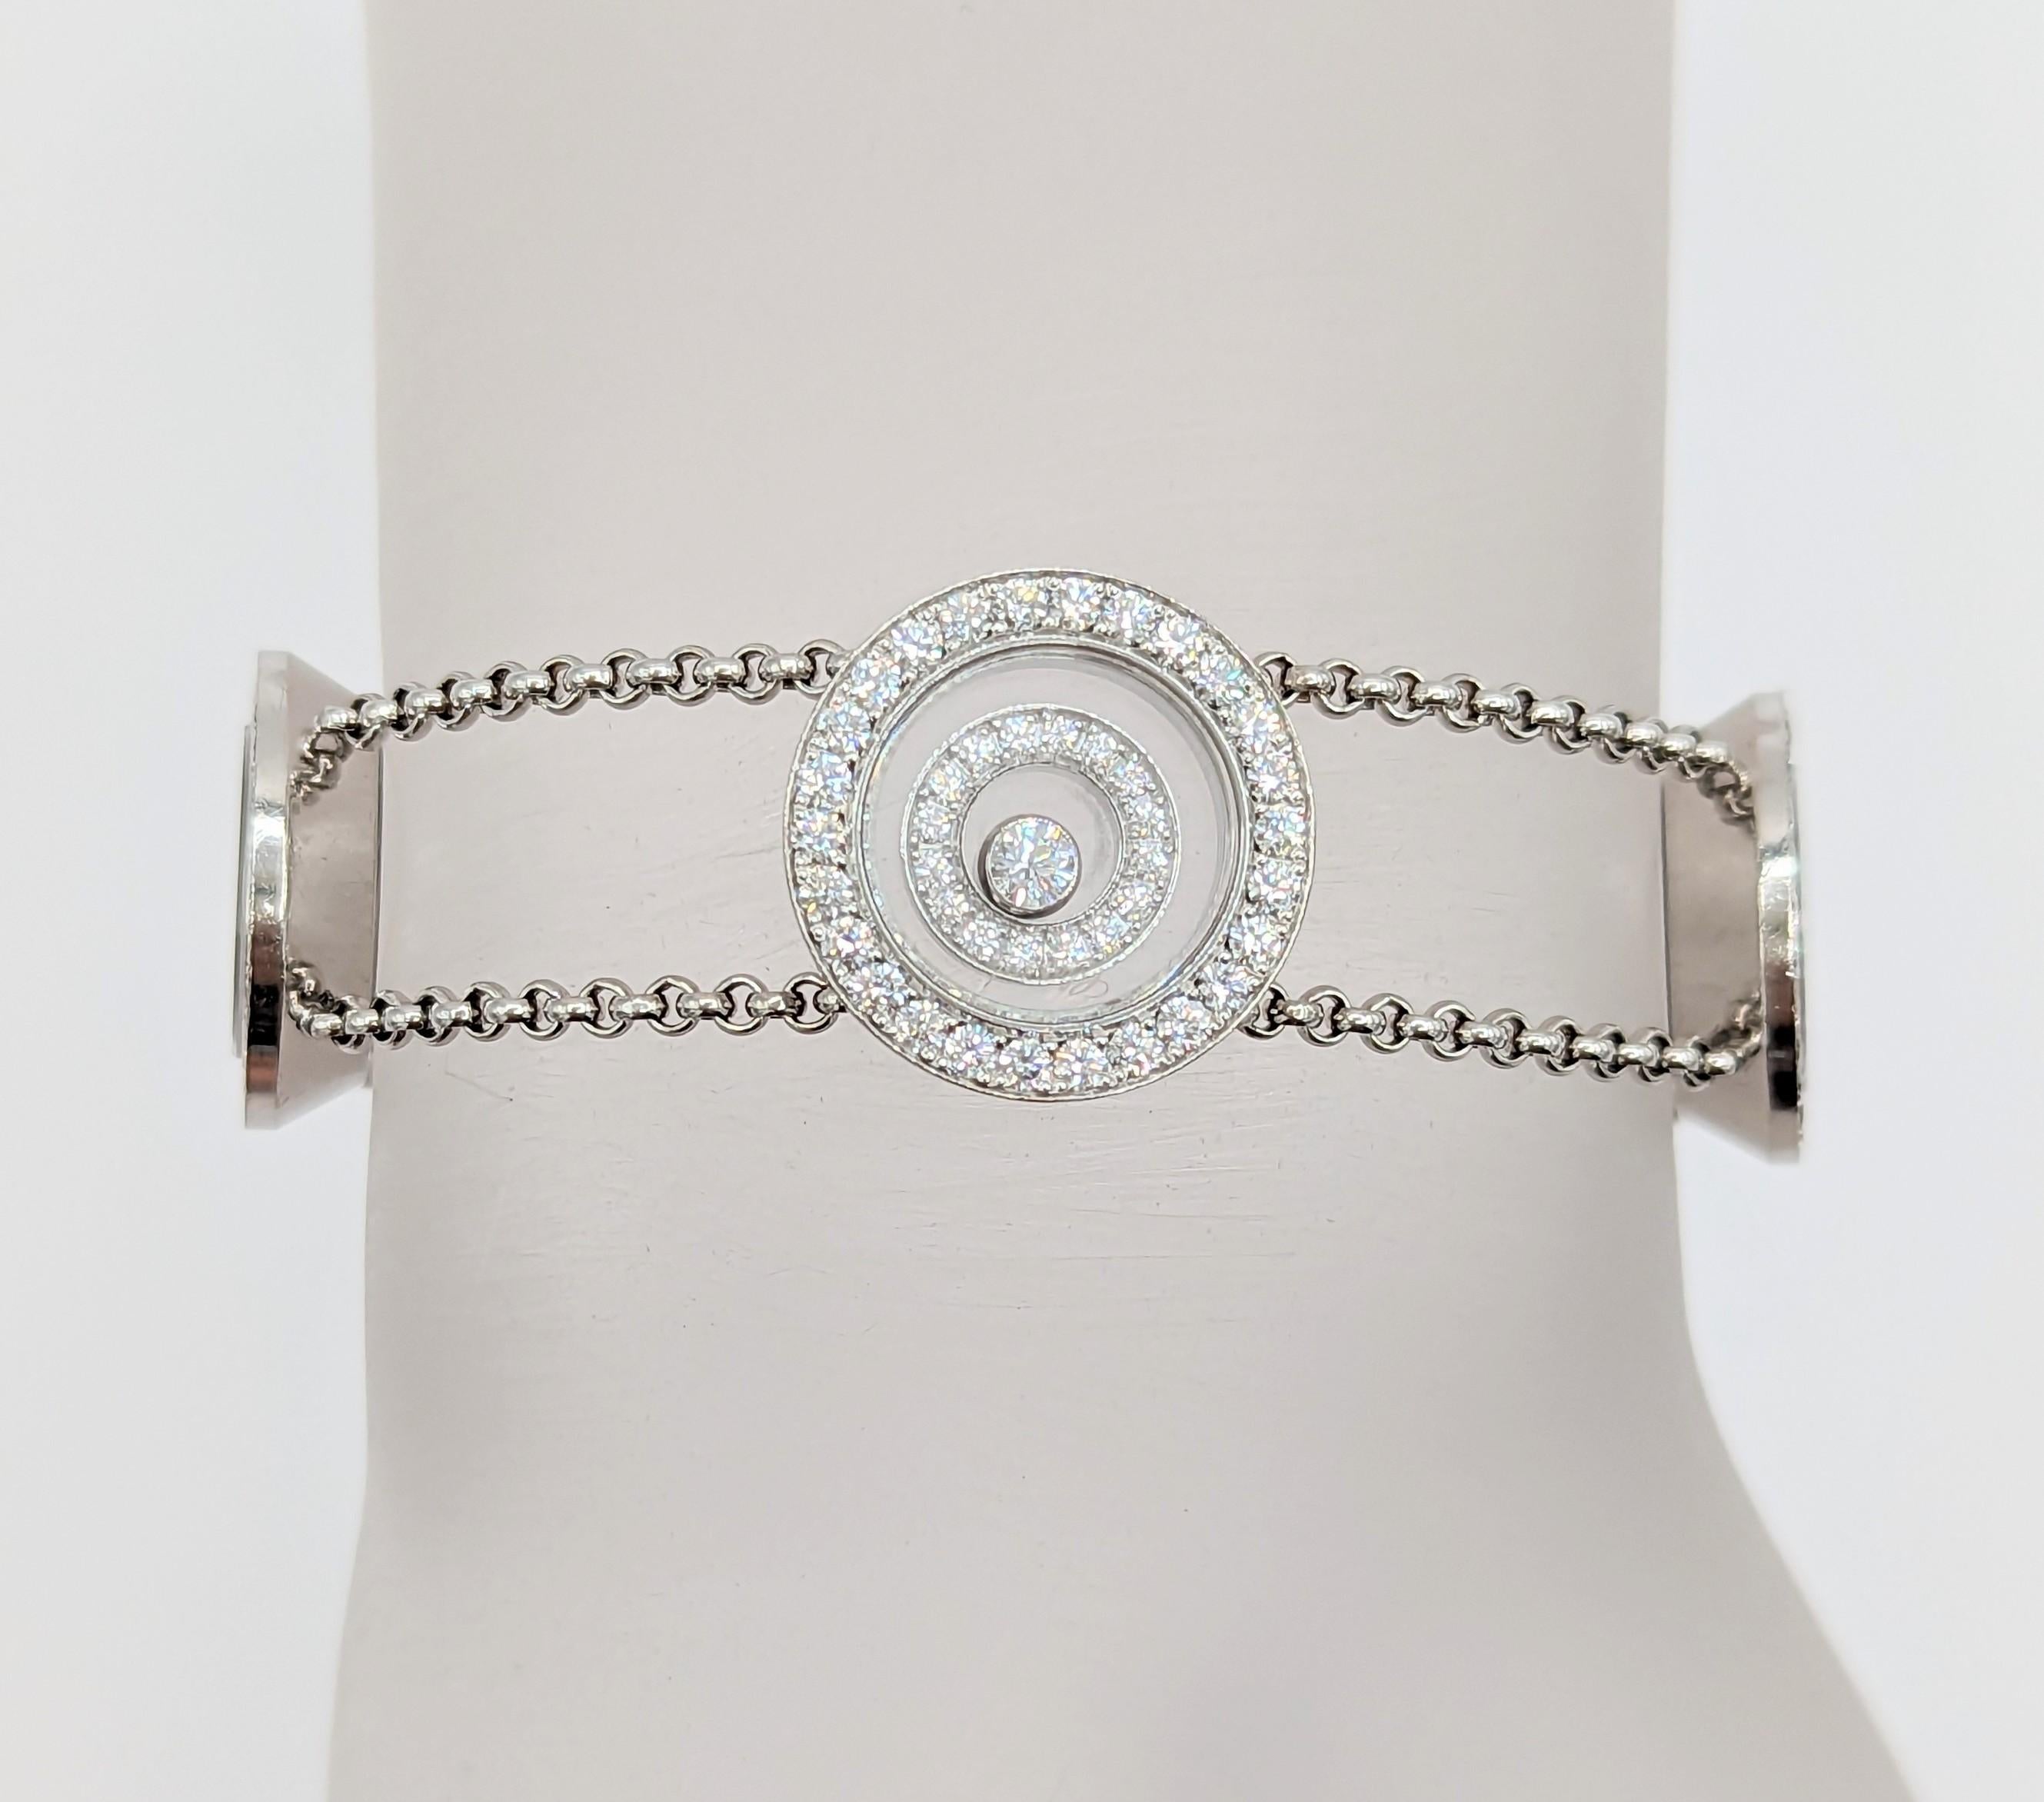 Wunderschönes Armband mit weißen Diamanten von Chopard, handgefertigt in 18 Karat Weißgold.  Die Länge beträgt 8